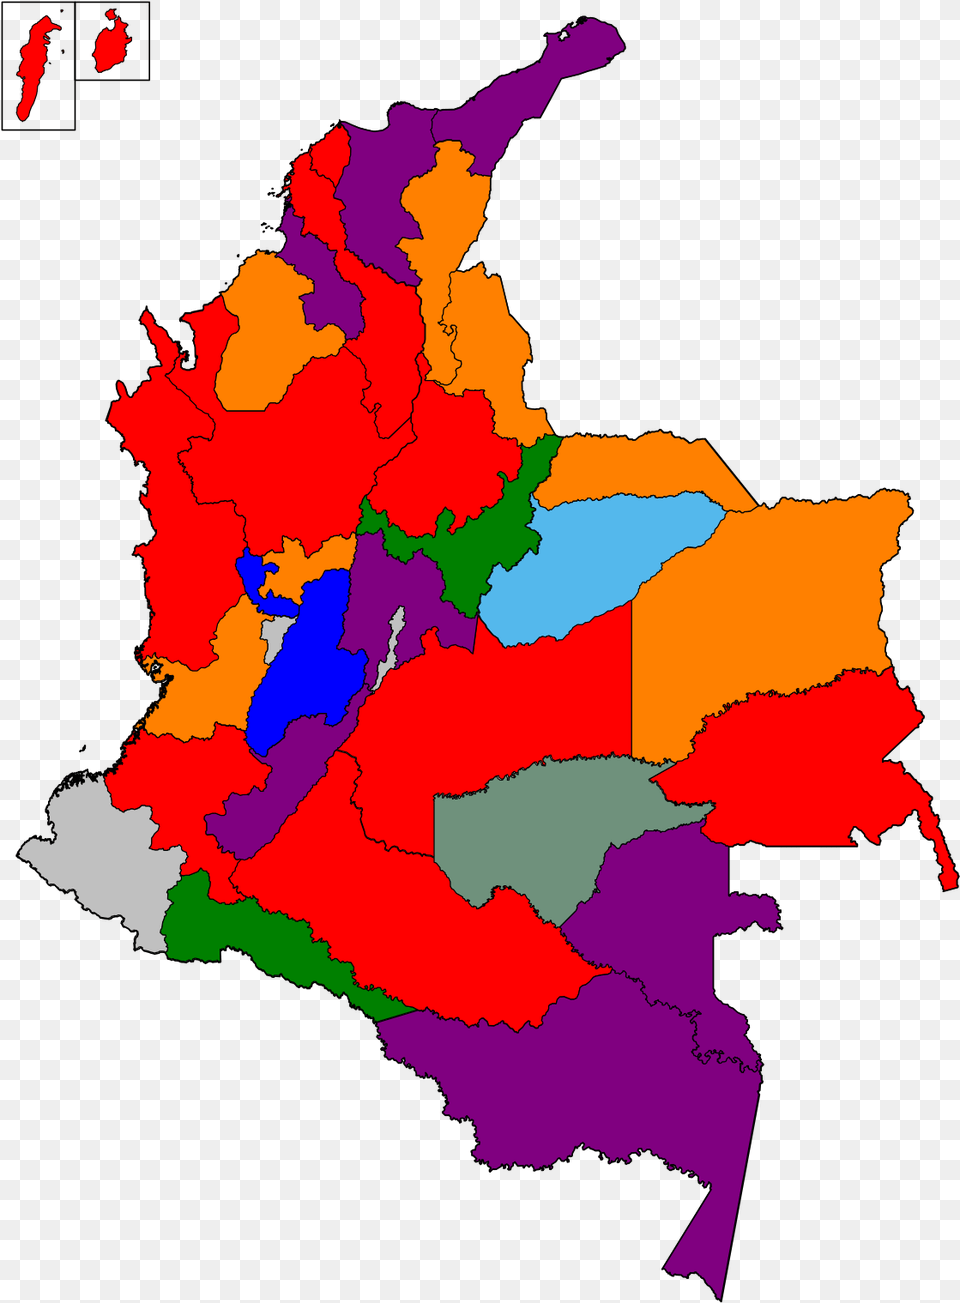 Elecciones Presidenciales De Colombia 2018 Mapa, Chart, Plot, Map, Atlas Png Image